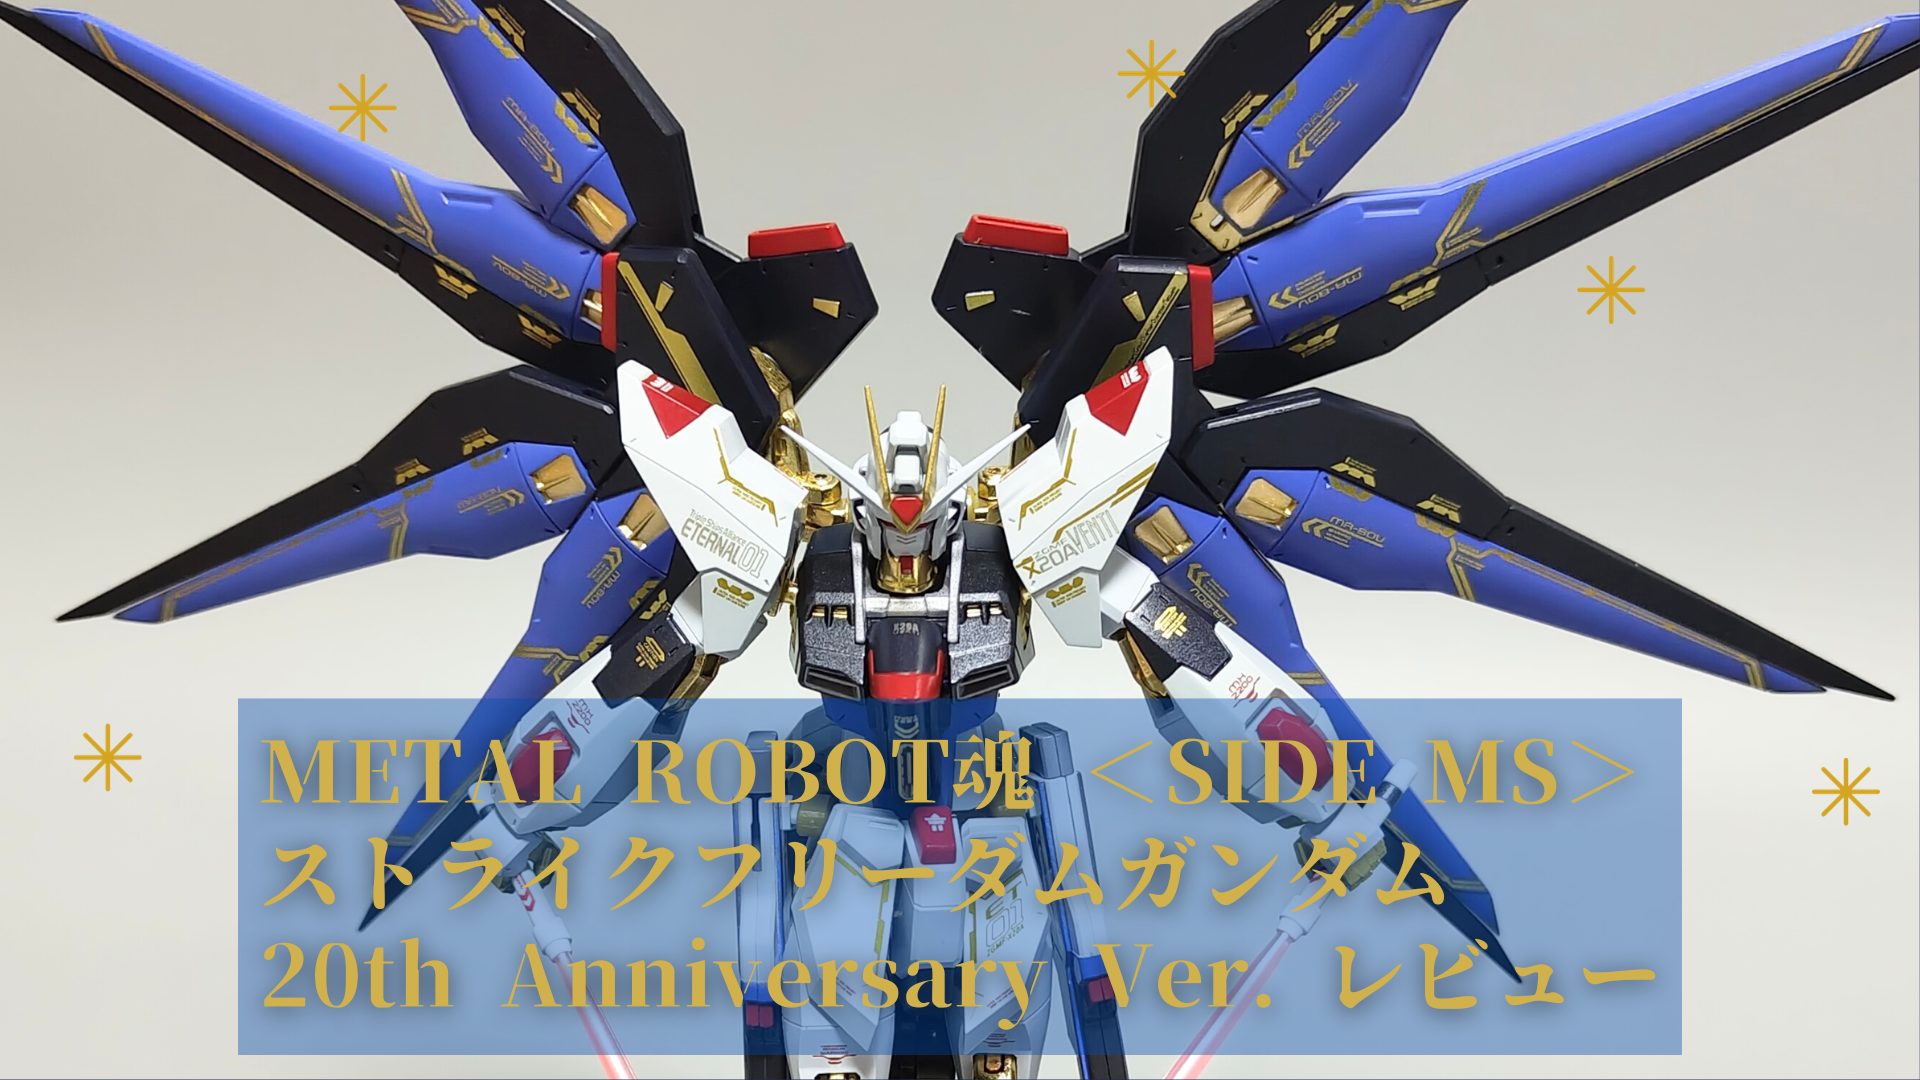 METAL ROBOT魂 ＜SIDE MS＞ ストライクフリーダムガンダム 20th Anniversary Ver. レビュー アイキャッチ画像